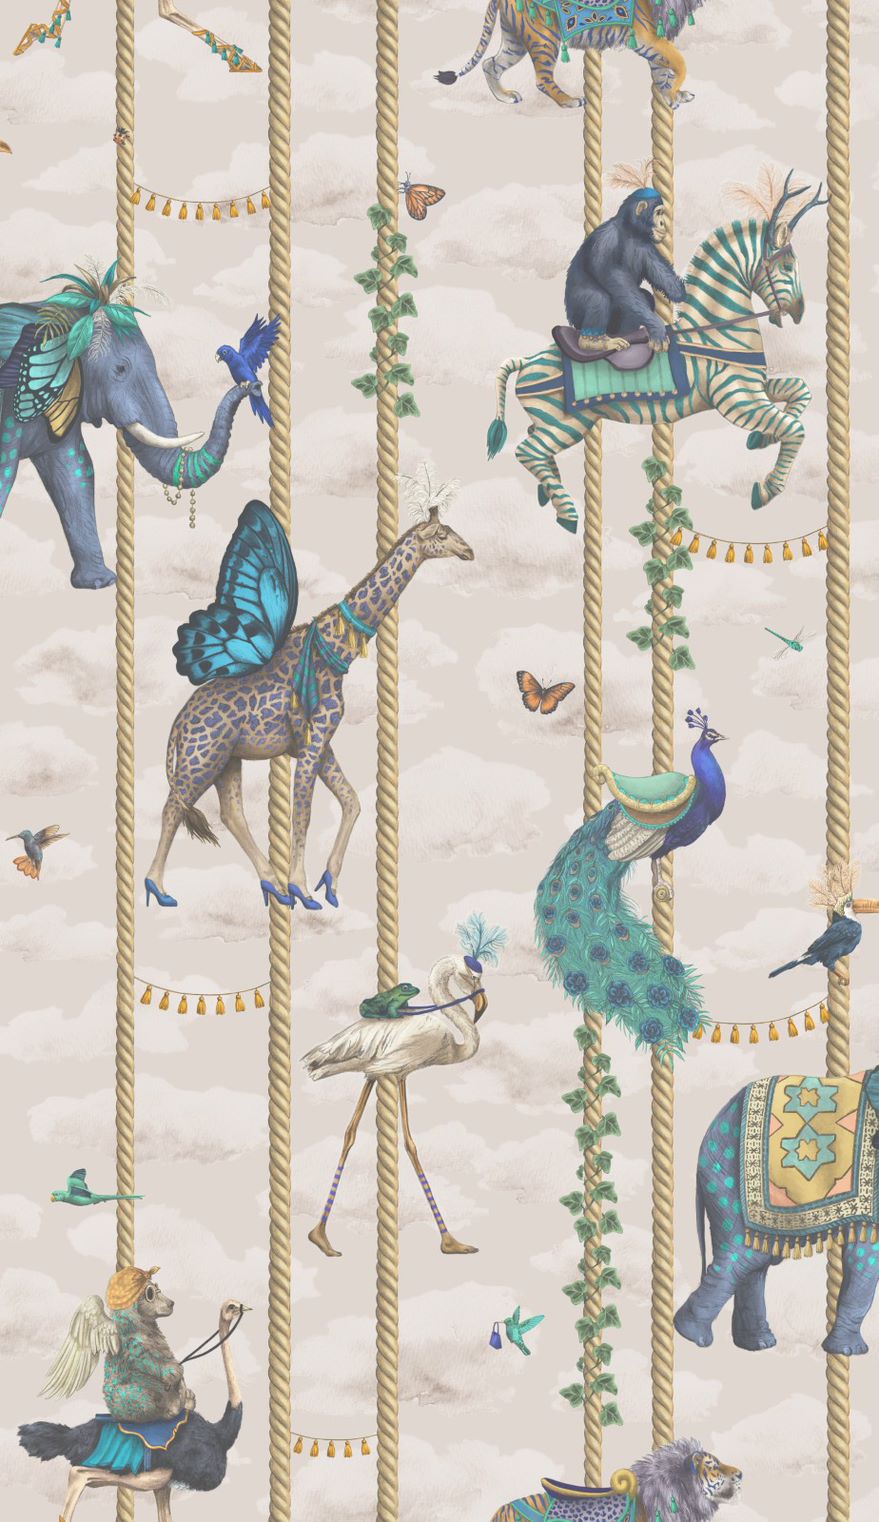 carnival-fever-carousel-blue-animals-on-carousel-poles-whimisal-childrens-wallpaper-linen-plaster-pink